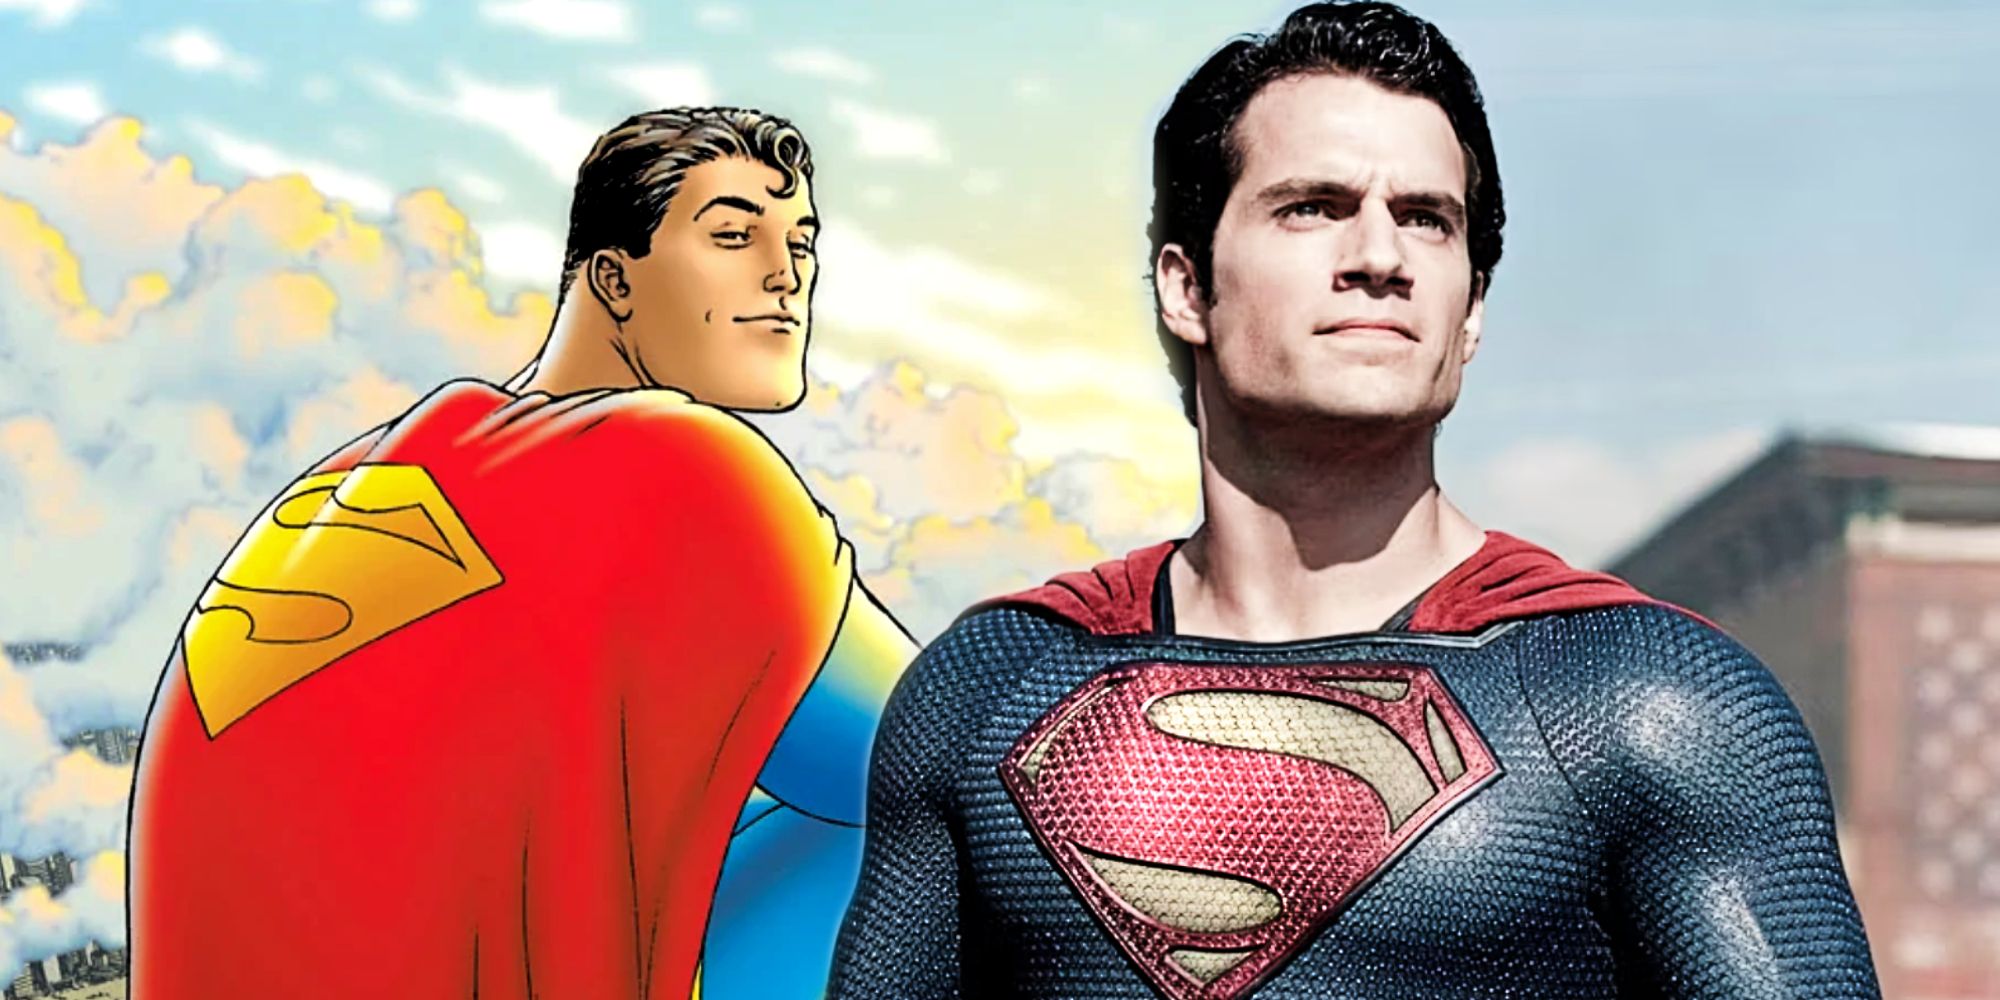 O Homem de Aço de Henry Cavill e o All-Star Superman